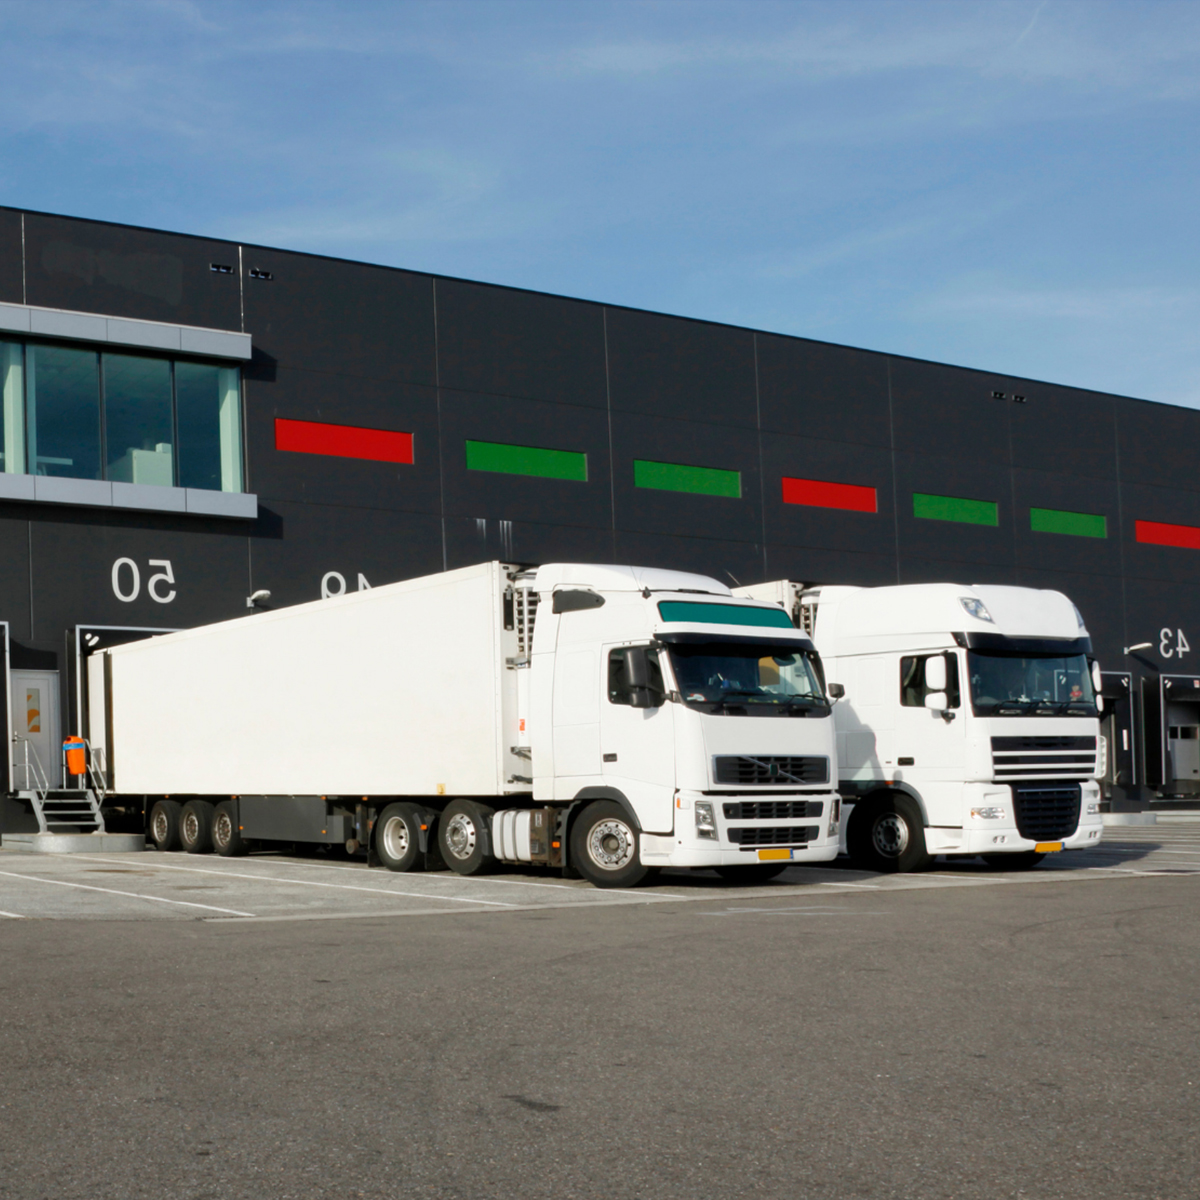 Deux camions sur un quai de chargement, illustrant les opérations de logistique et de transport.